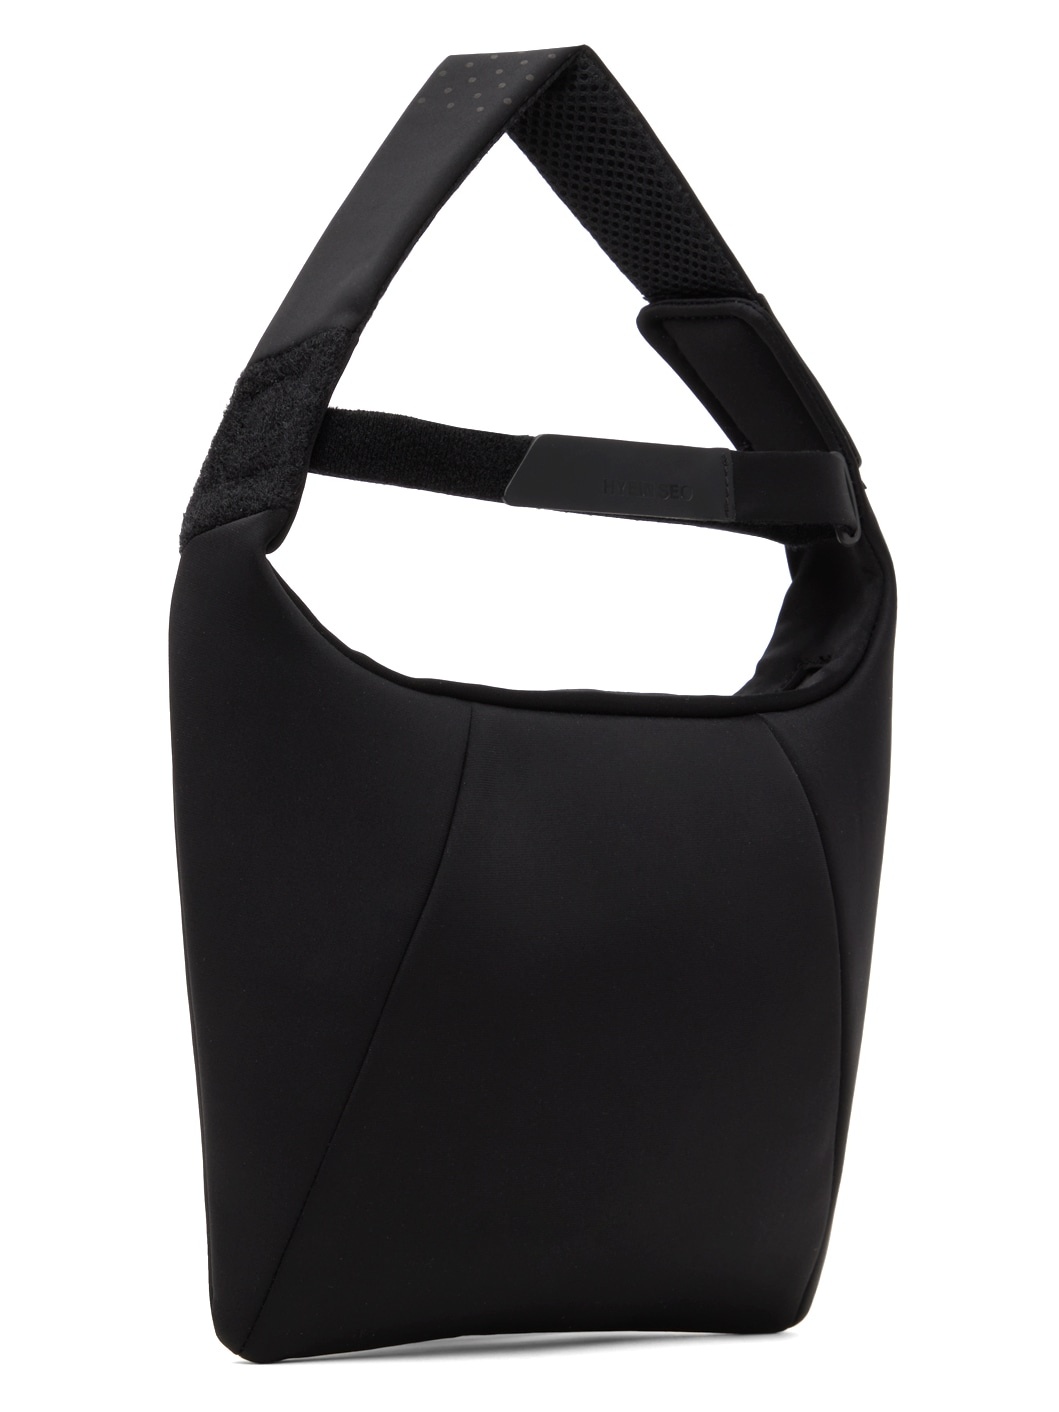 Black Sport Bag - 2